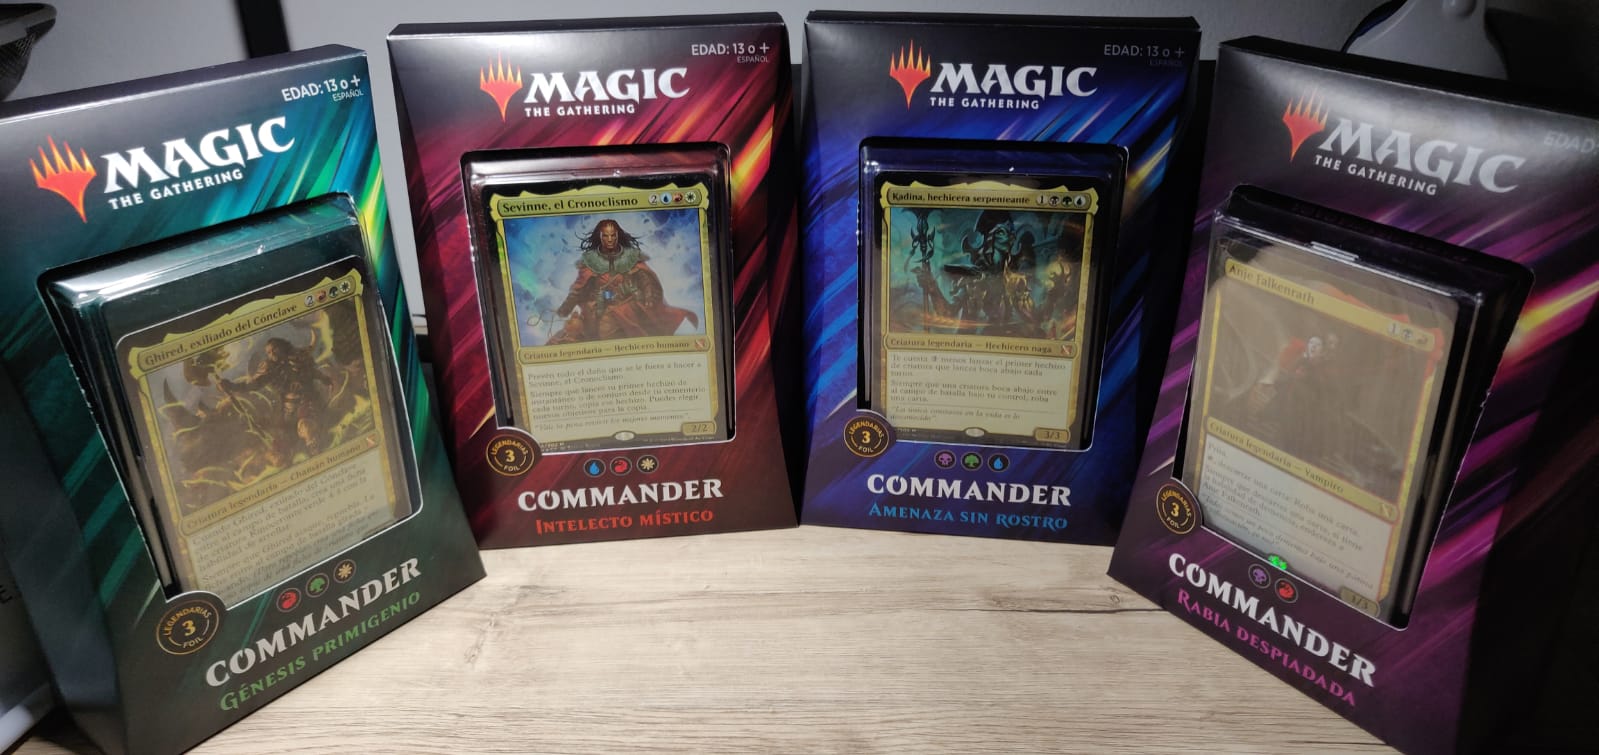 Magic: La reunión | Commander 2019 (idioma español no garantizado)